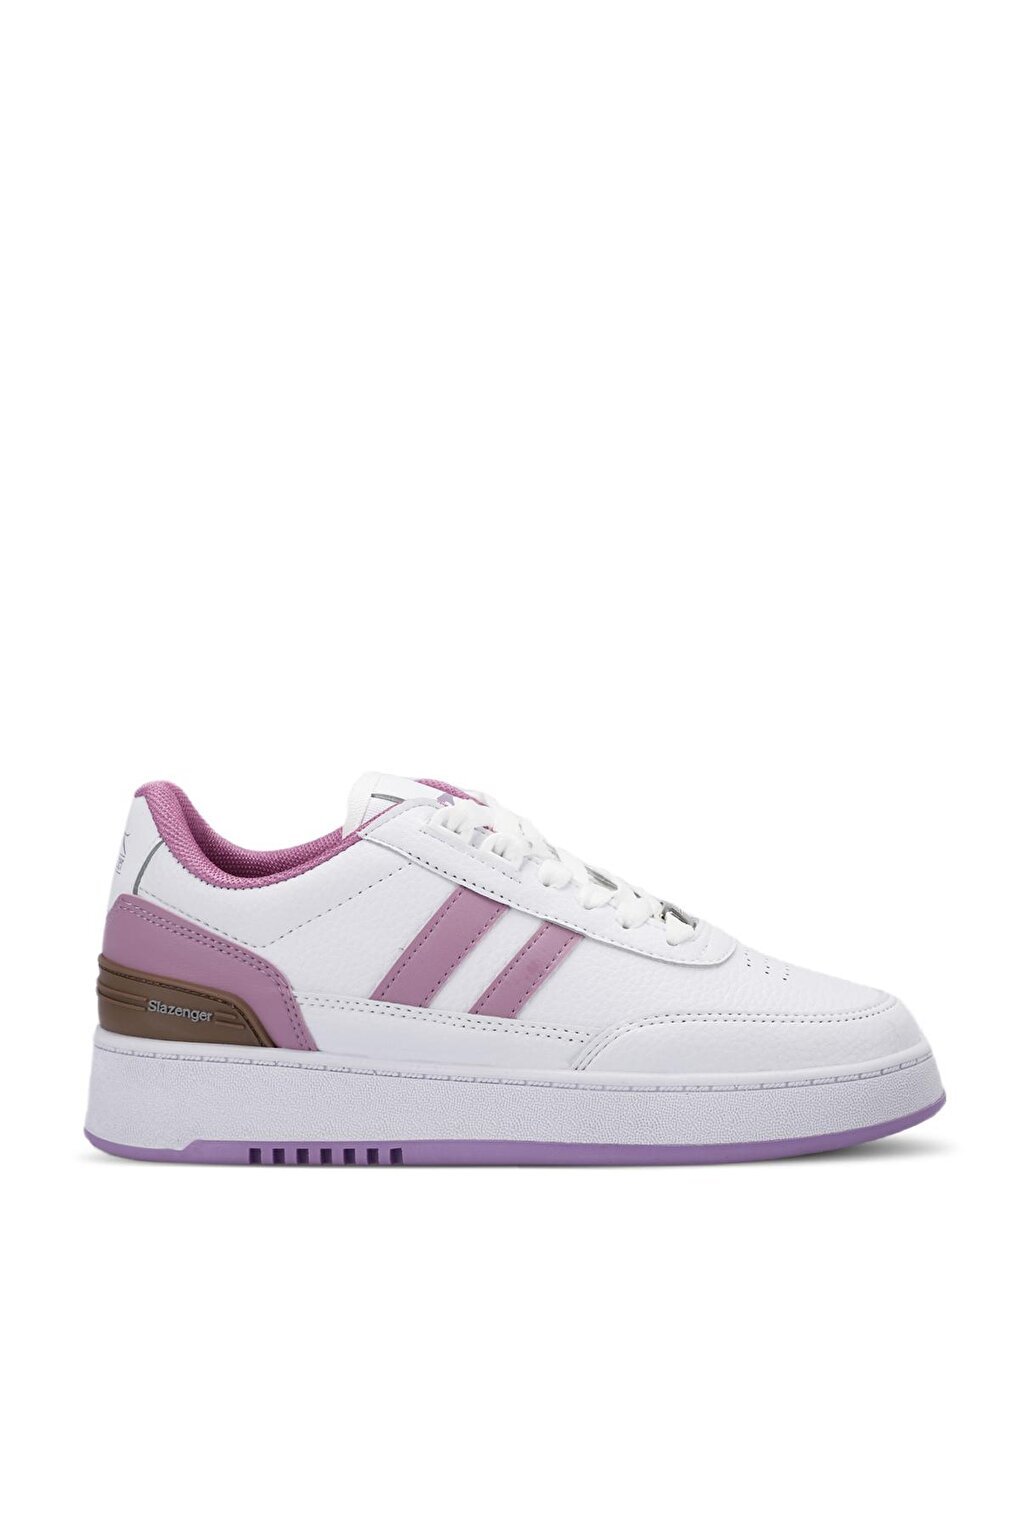 DAPHNE Sneaker Женская обувь Белый/Фиолетовый SLAZENGER daphne sneaker женская обувь белый розовый slazenger